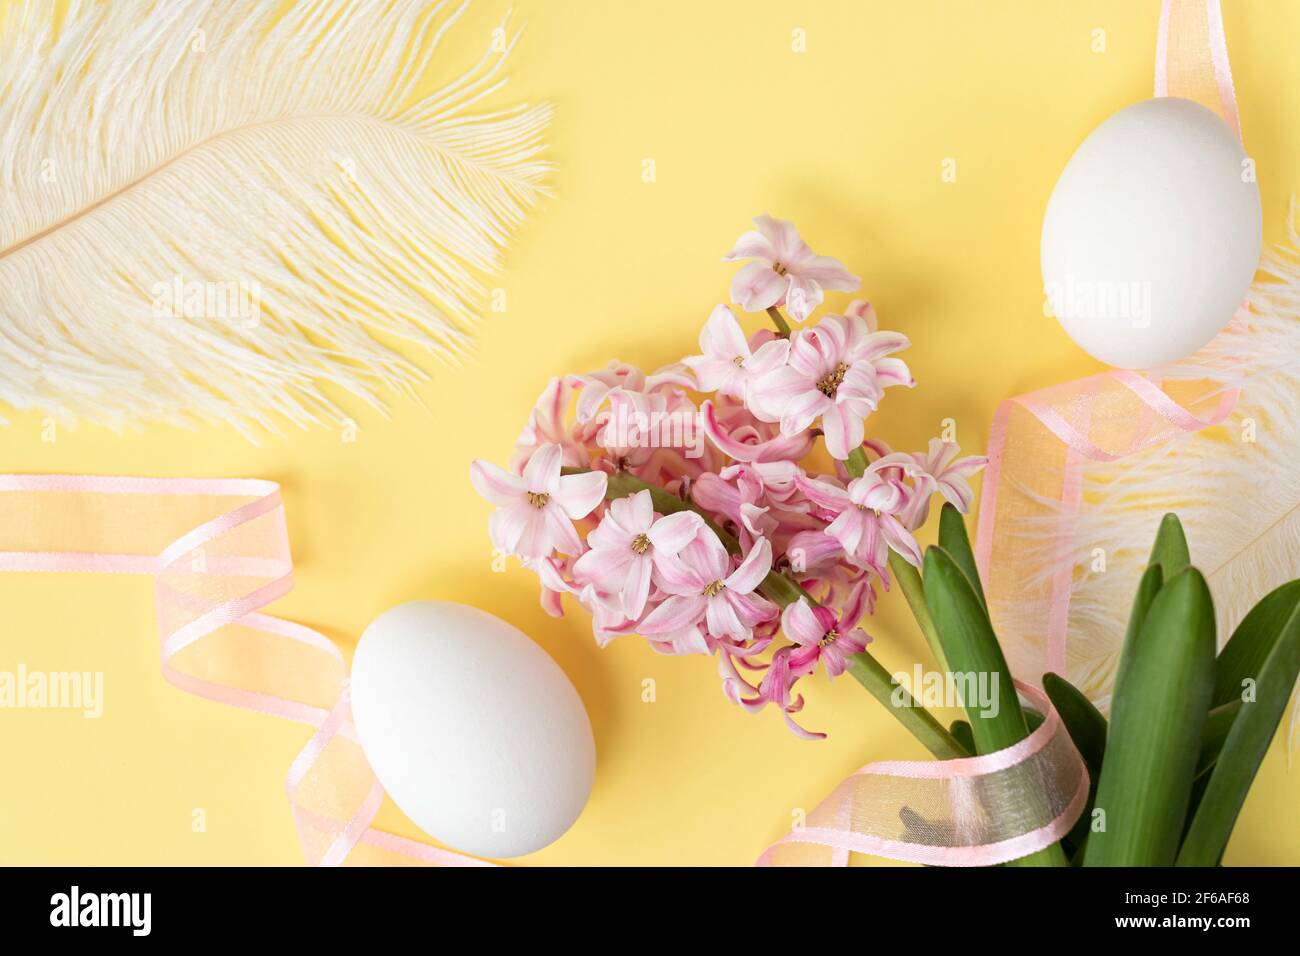 Hyazinthen Blüten mit zwei weißen Eiern, weißen Federn und rosa Band auf pastellgelben Farben. Frohe Ostern Konzept. Osterhintergrund. Draufsicht Stockfoto